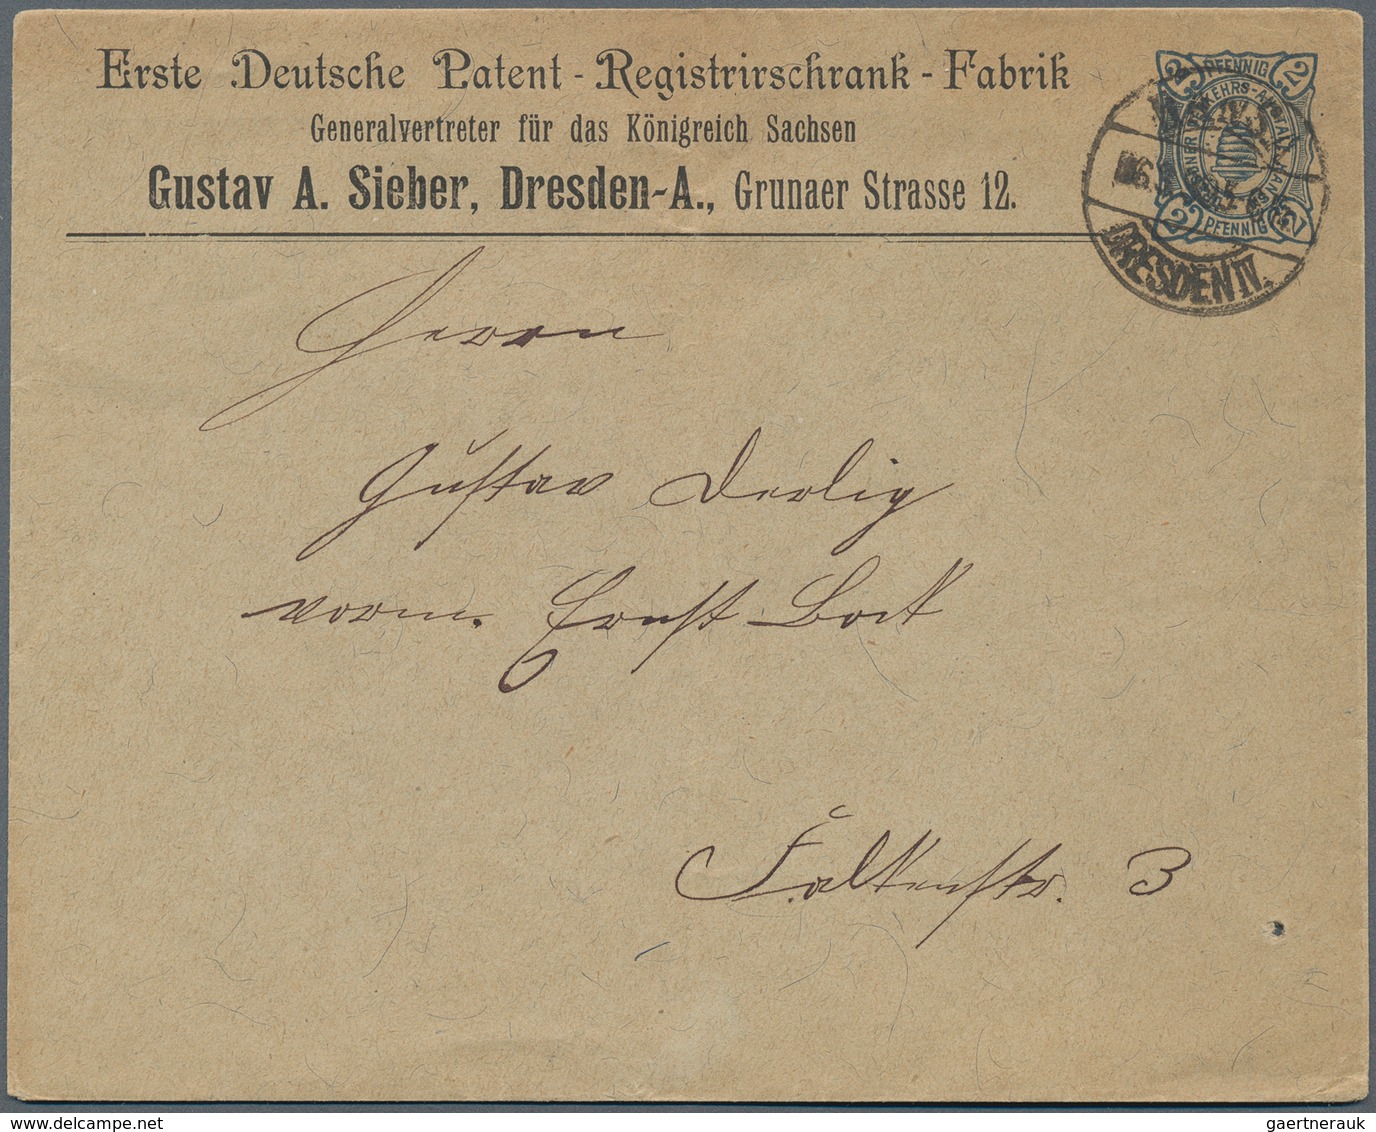 Deutsches Reich - Privatpost (Stadtpost): 1886/1900, DRESDEN HANSA, gehaltvolle Sammlung mit ca.150